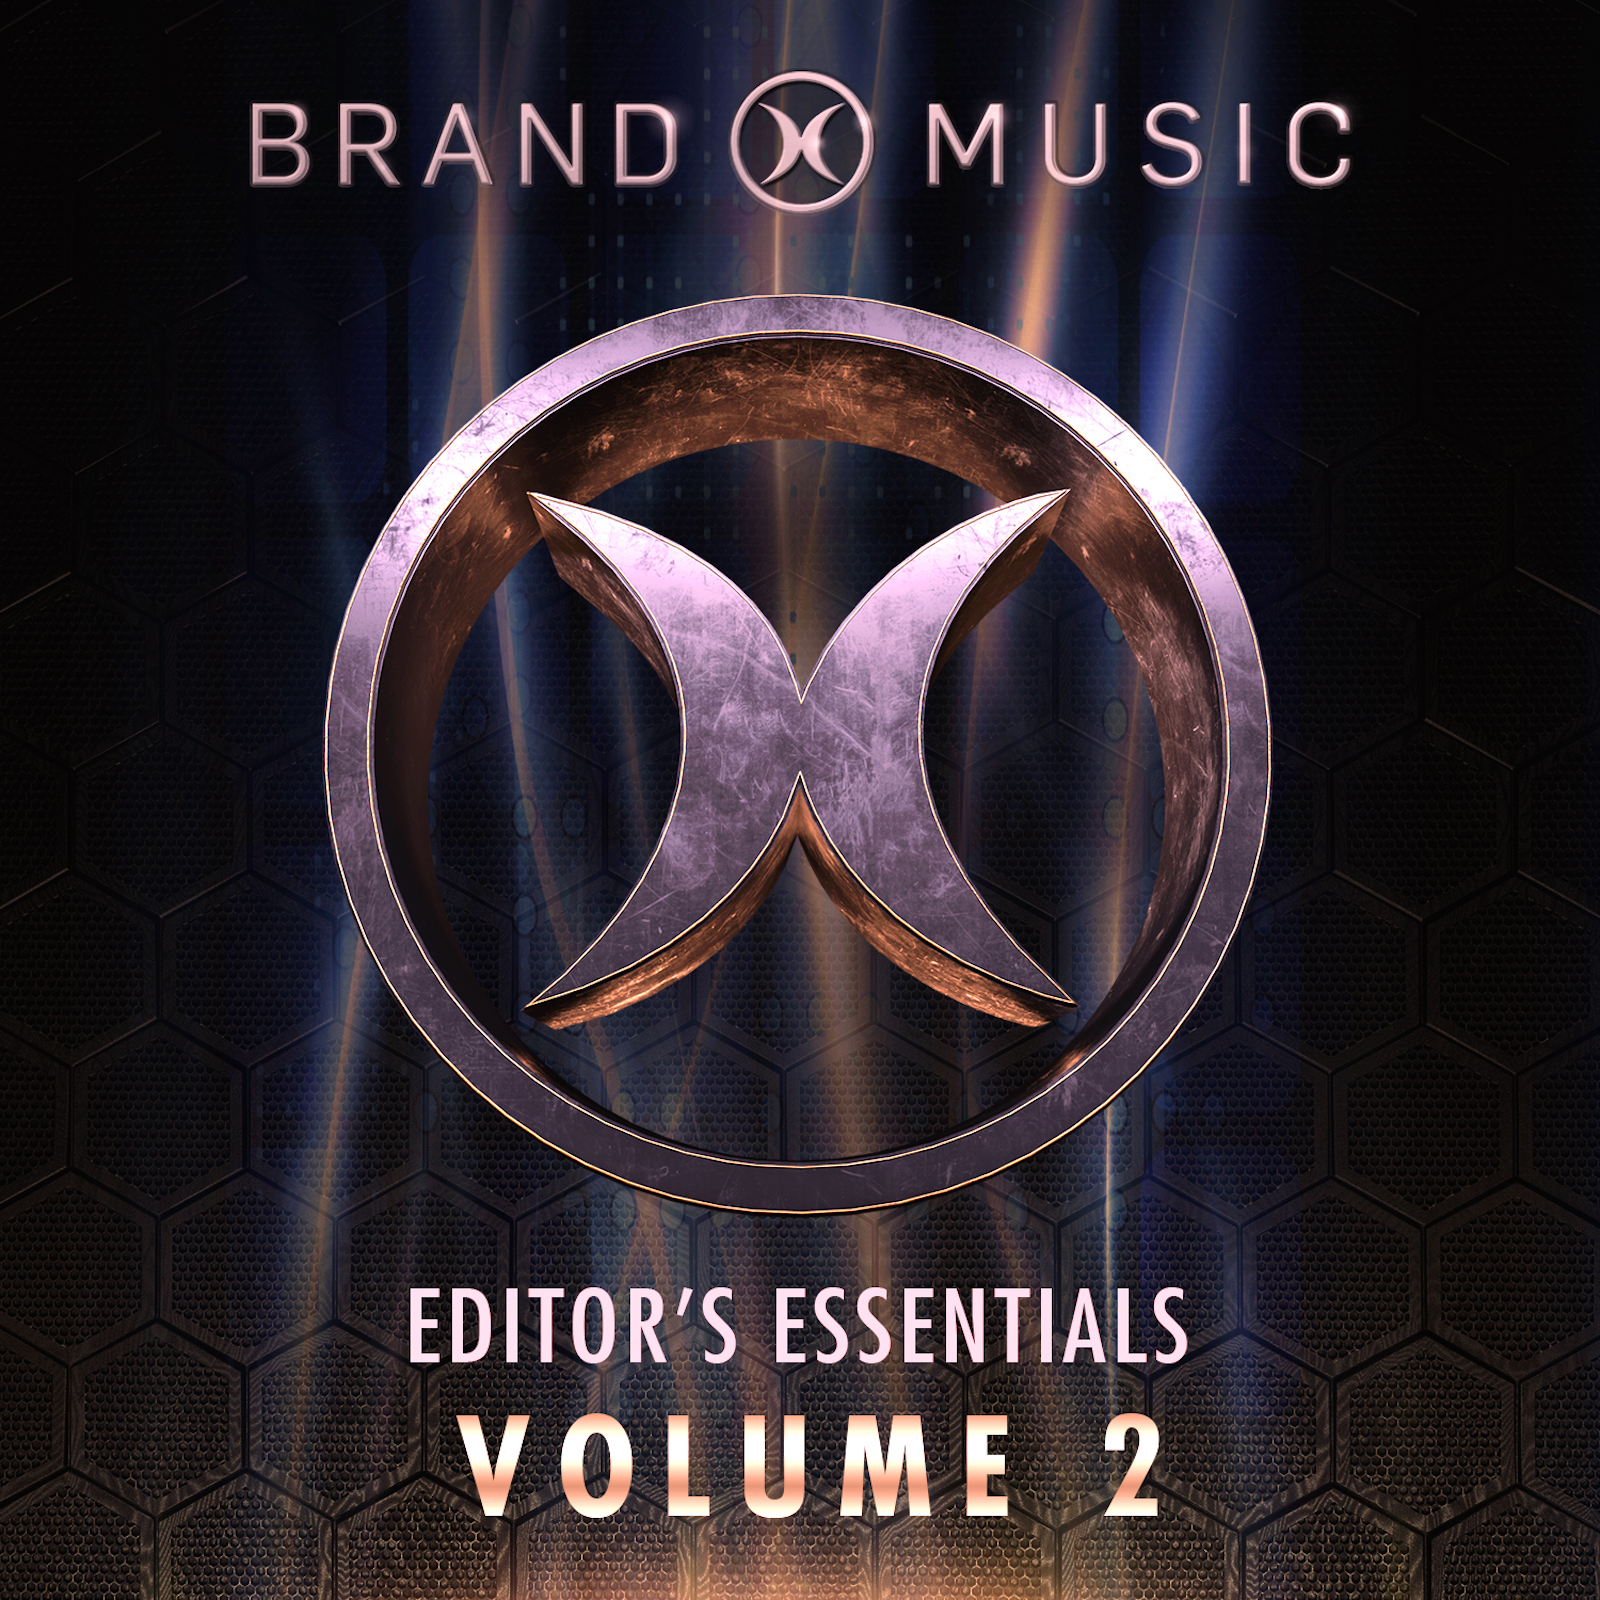 Editors Essentials Volume 2